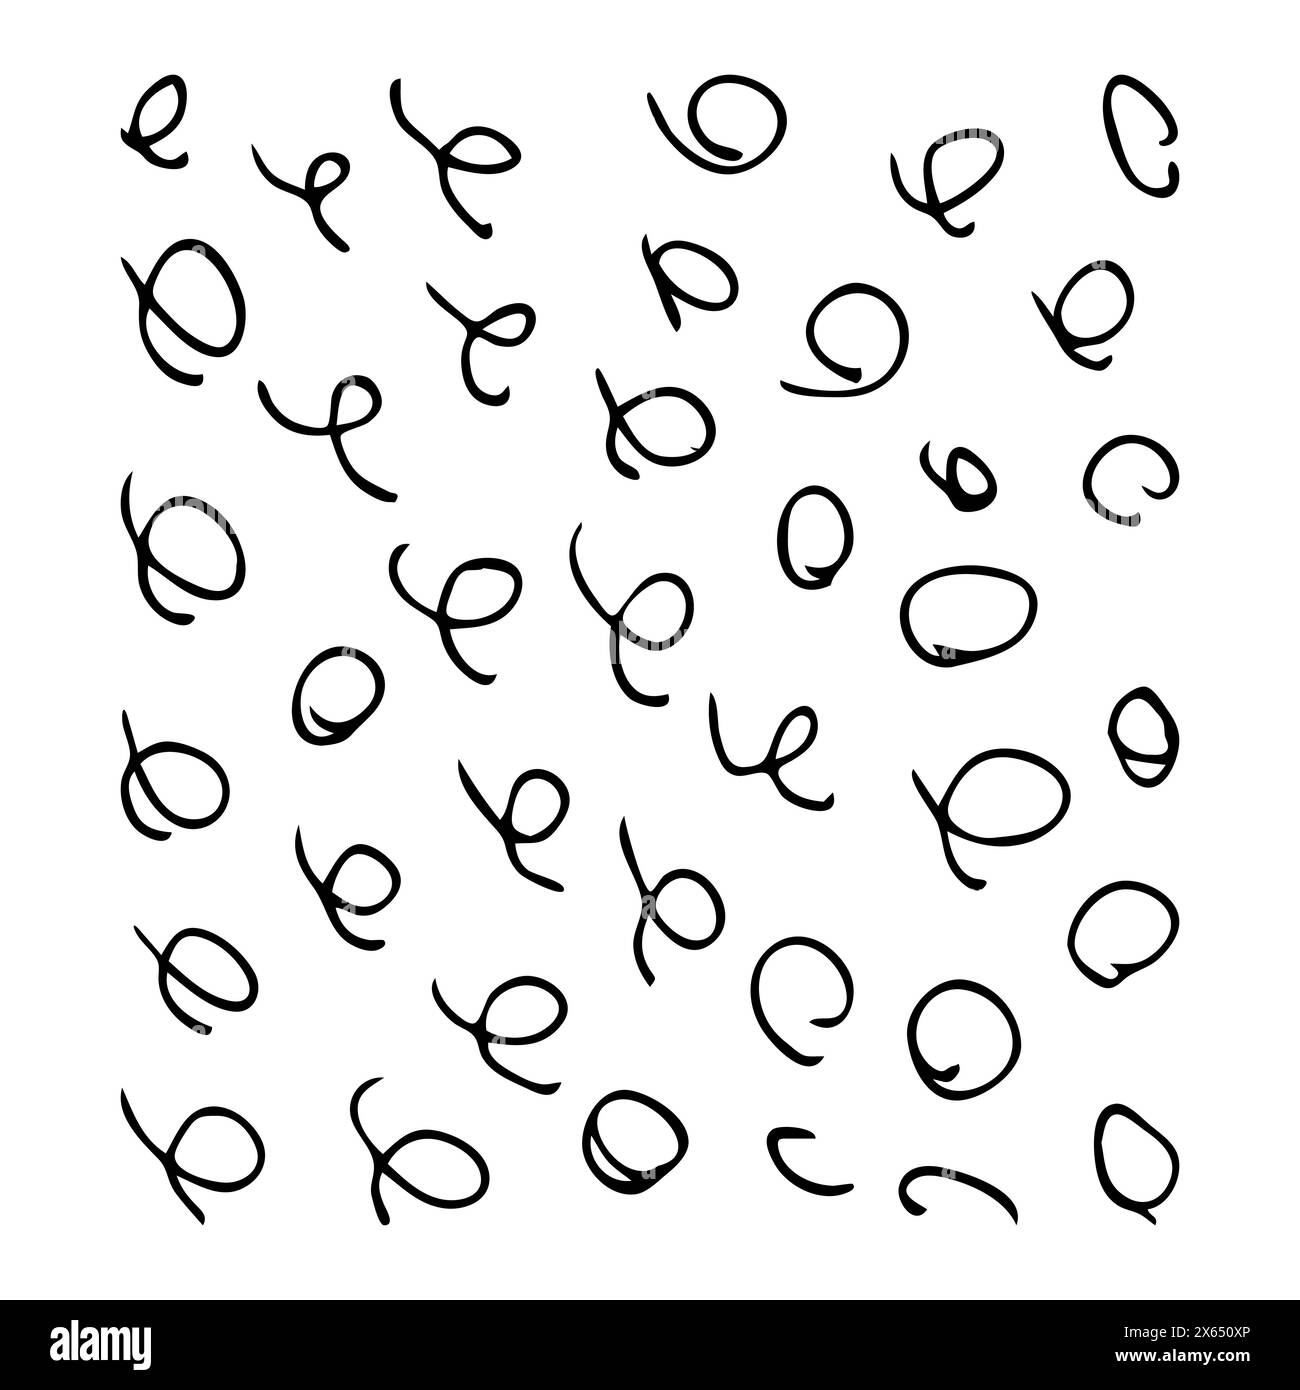 Squiggles disegnati a mano. Set di vortici ricci. Schizzo nero isolato su sfondo bianco. Illustrazione vettoriale. Illustrazione Vettoriale